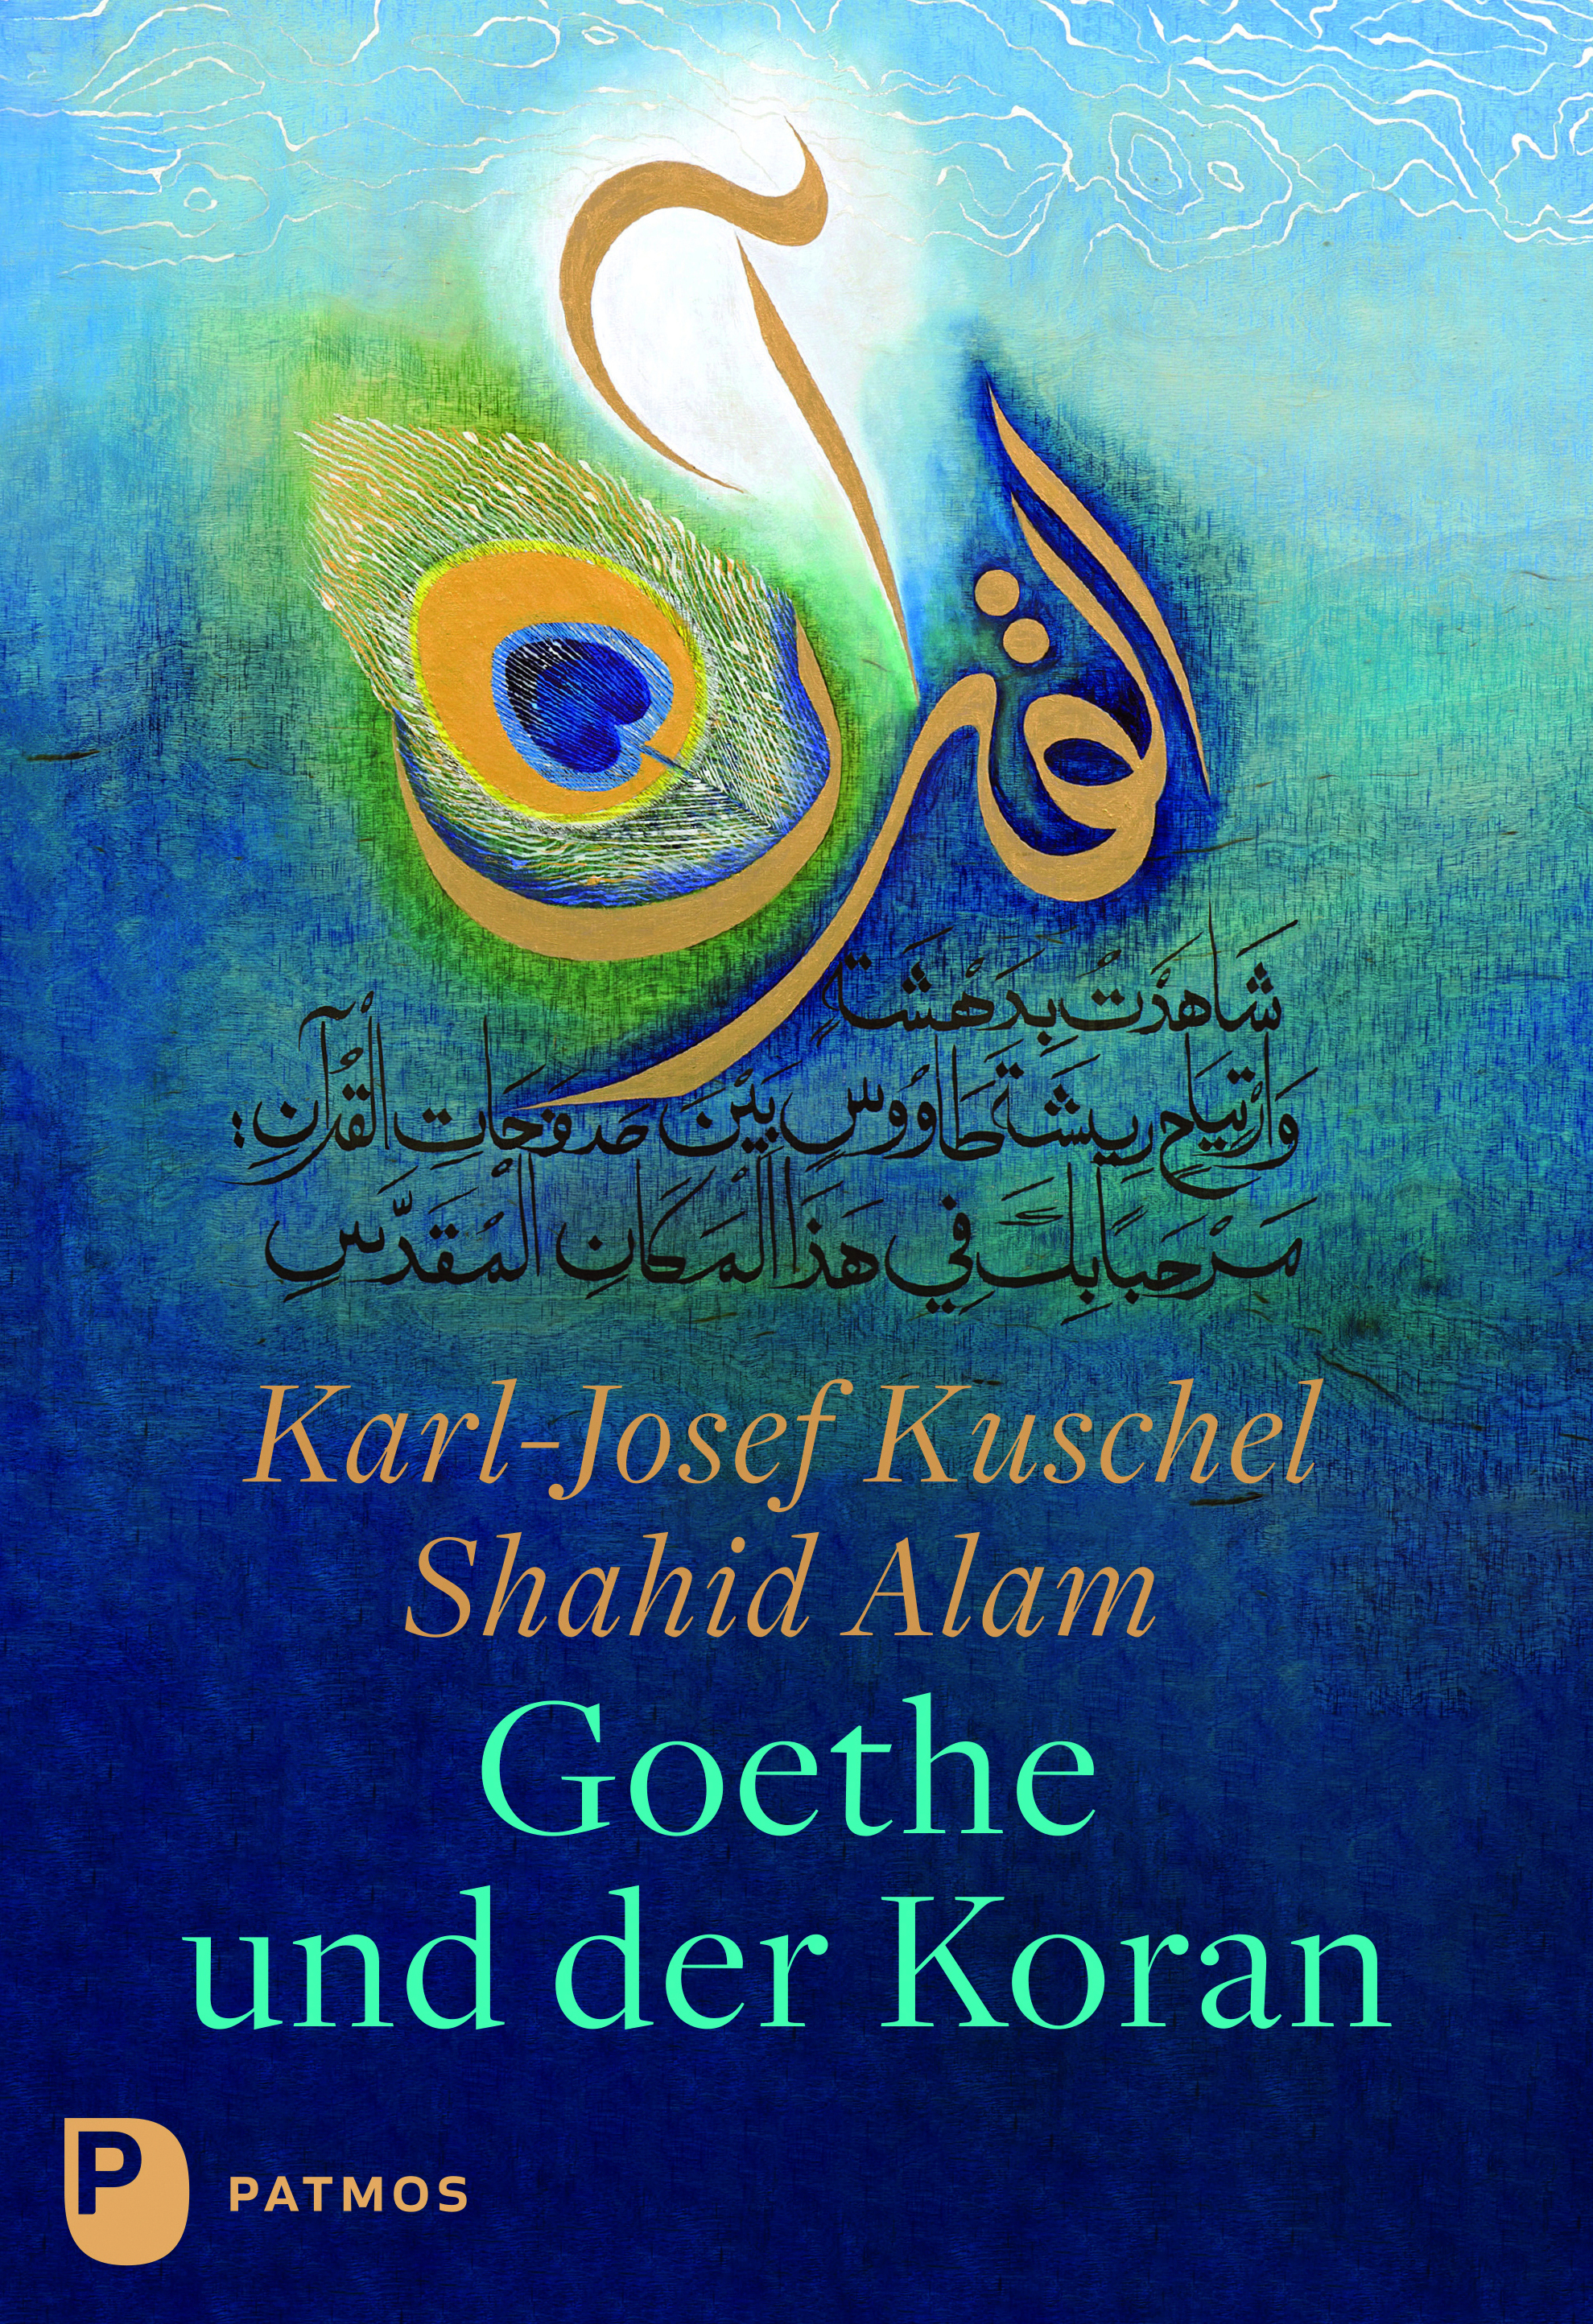 Buchcover "Goethe und der Koran" von karl-Josef Kuschel und Shahid Alam; Quelle: Patmos Verlag